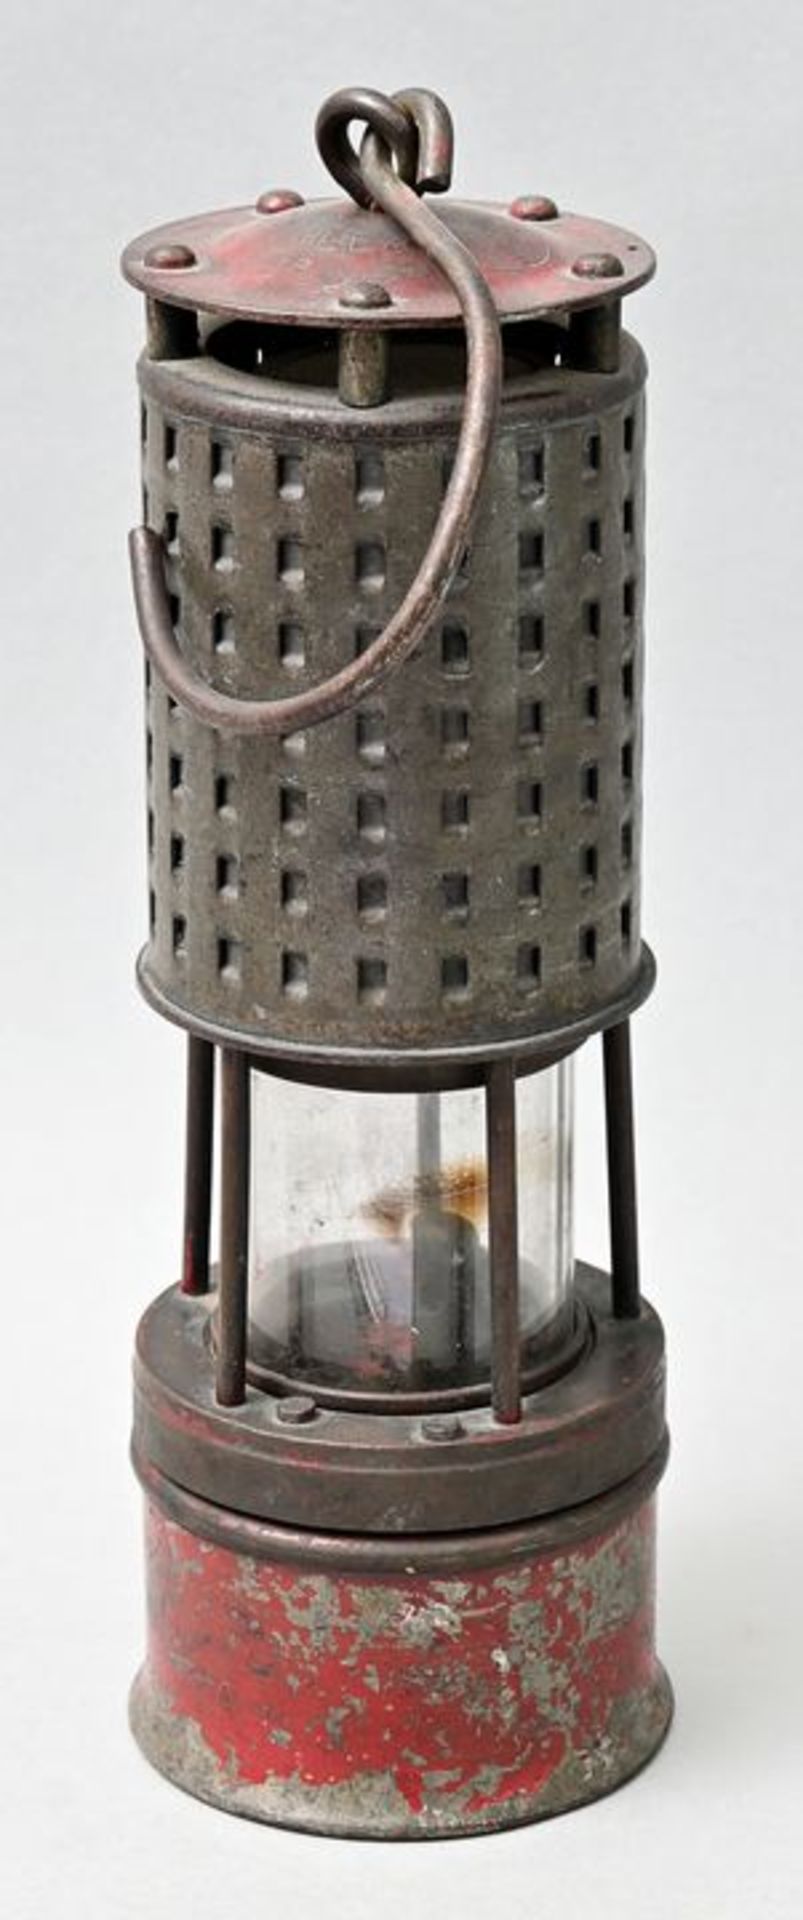 Grubenlampe/ Wetterlampe/ miner's lamp